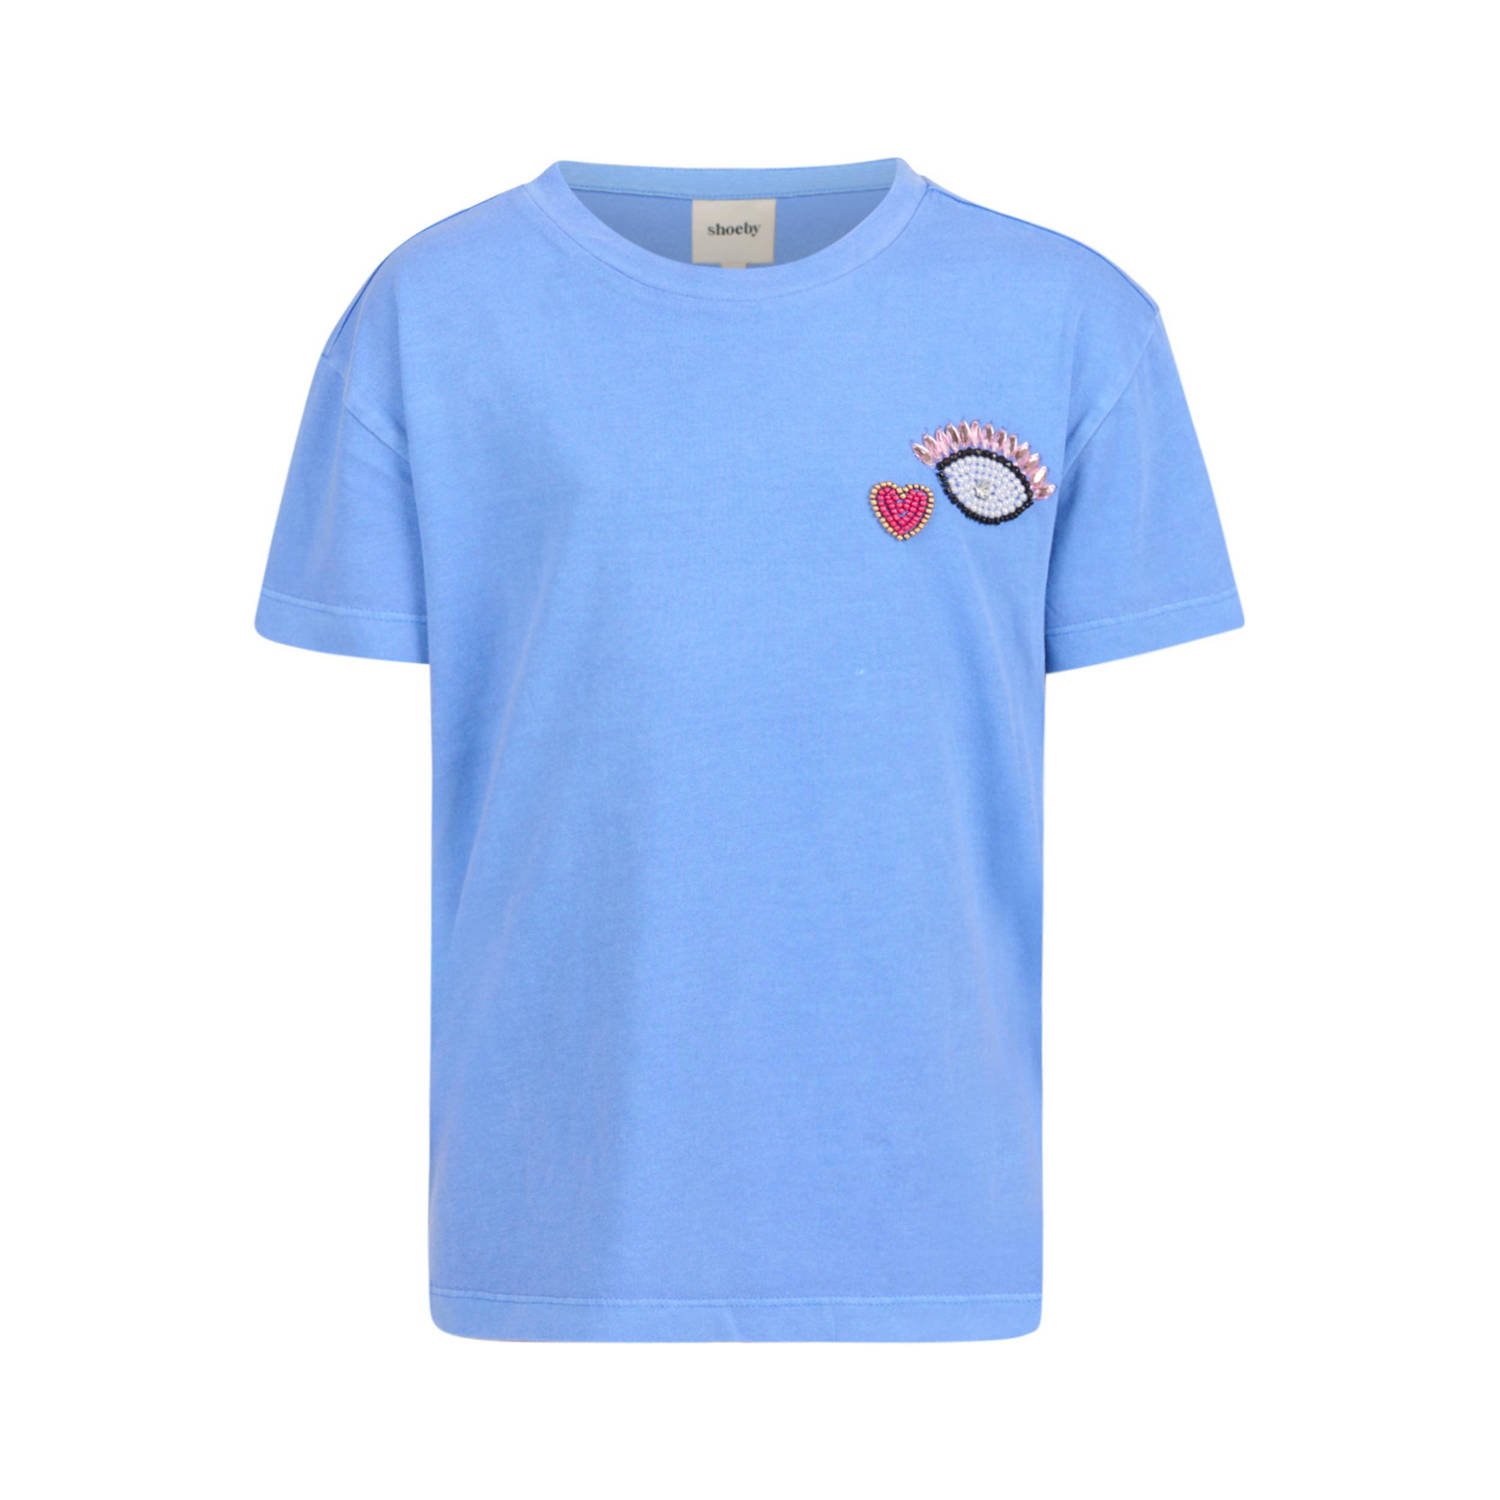 Shoeby T-shirt blauw Meisjes Katoen Ronde hals Effen 170 176